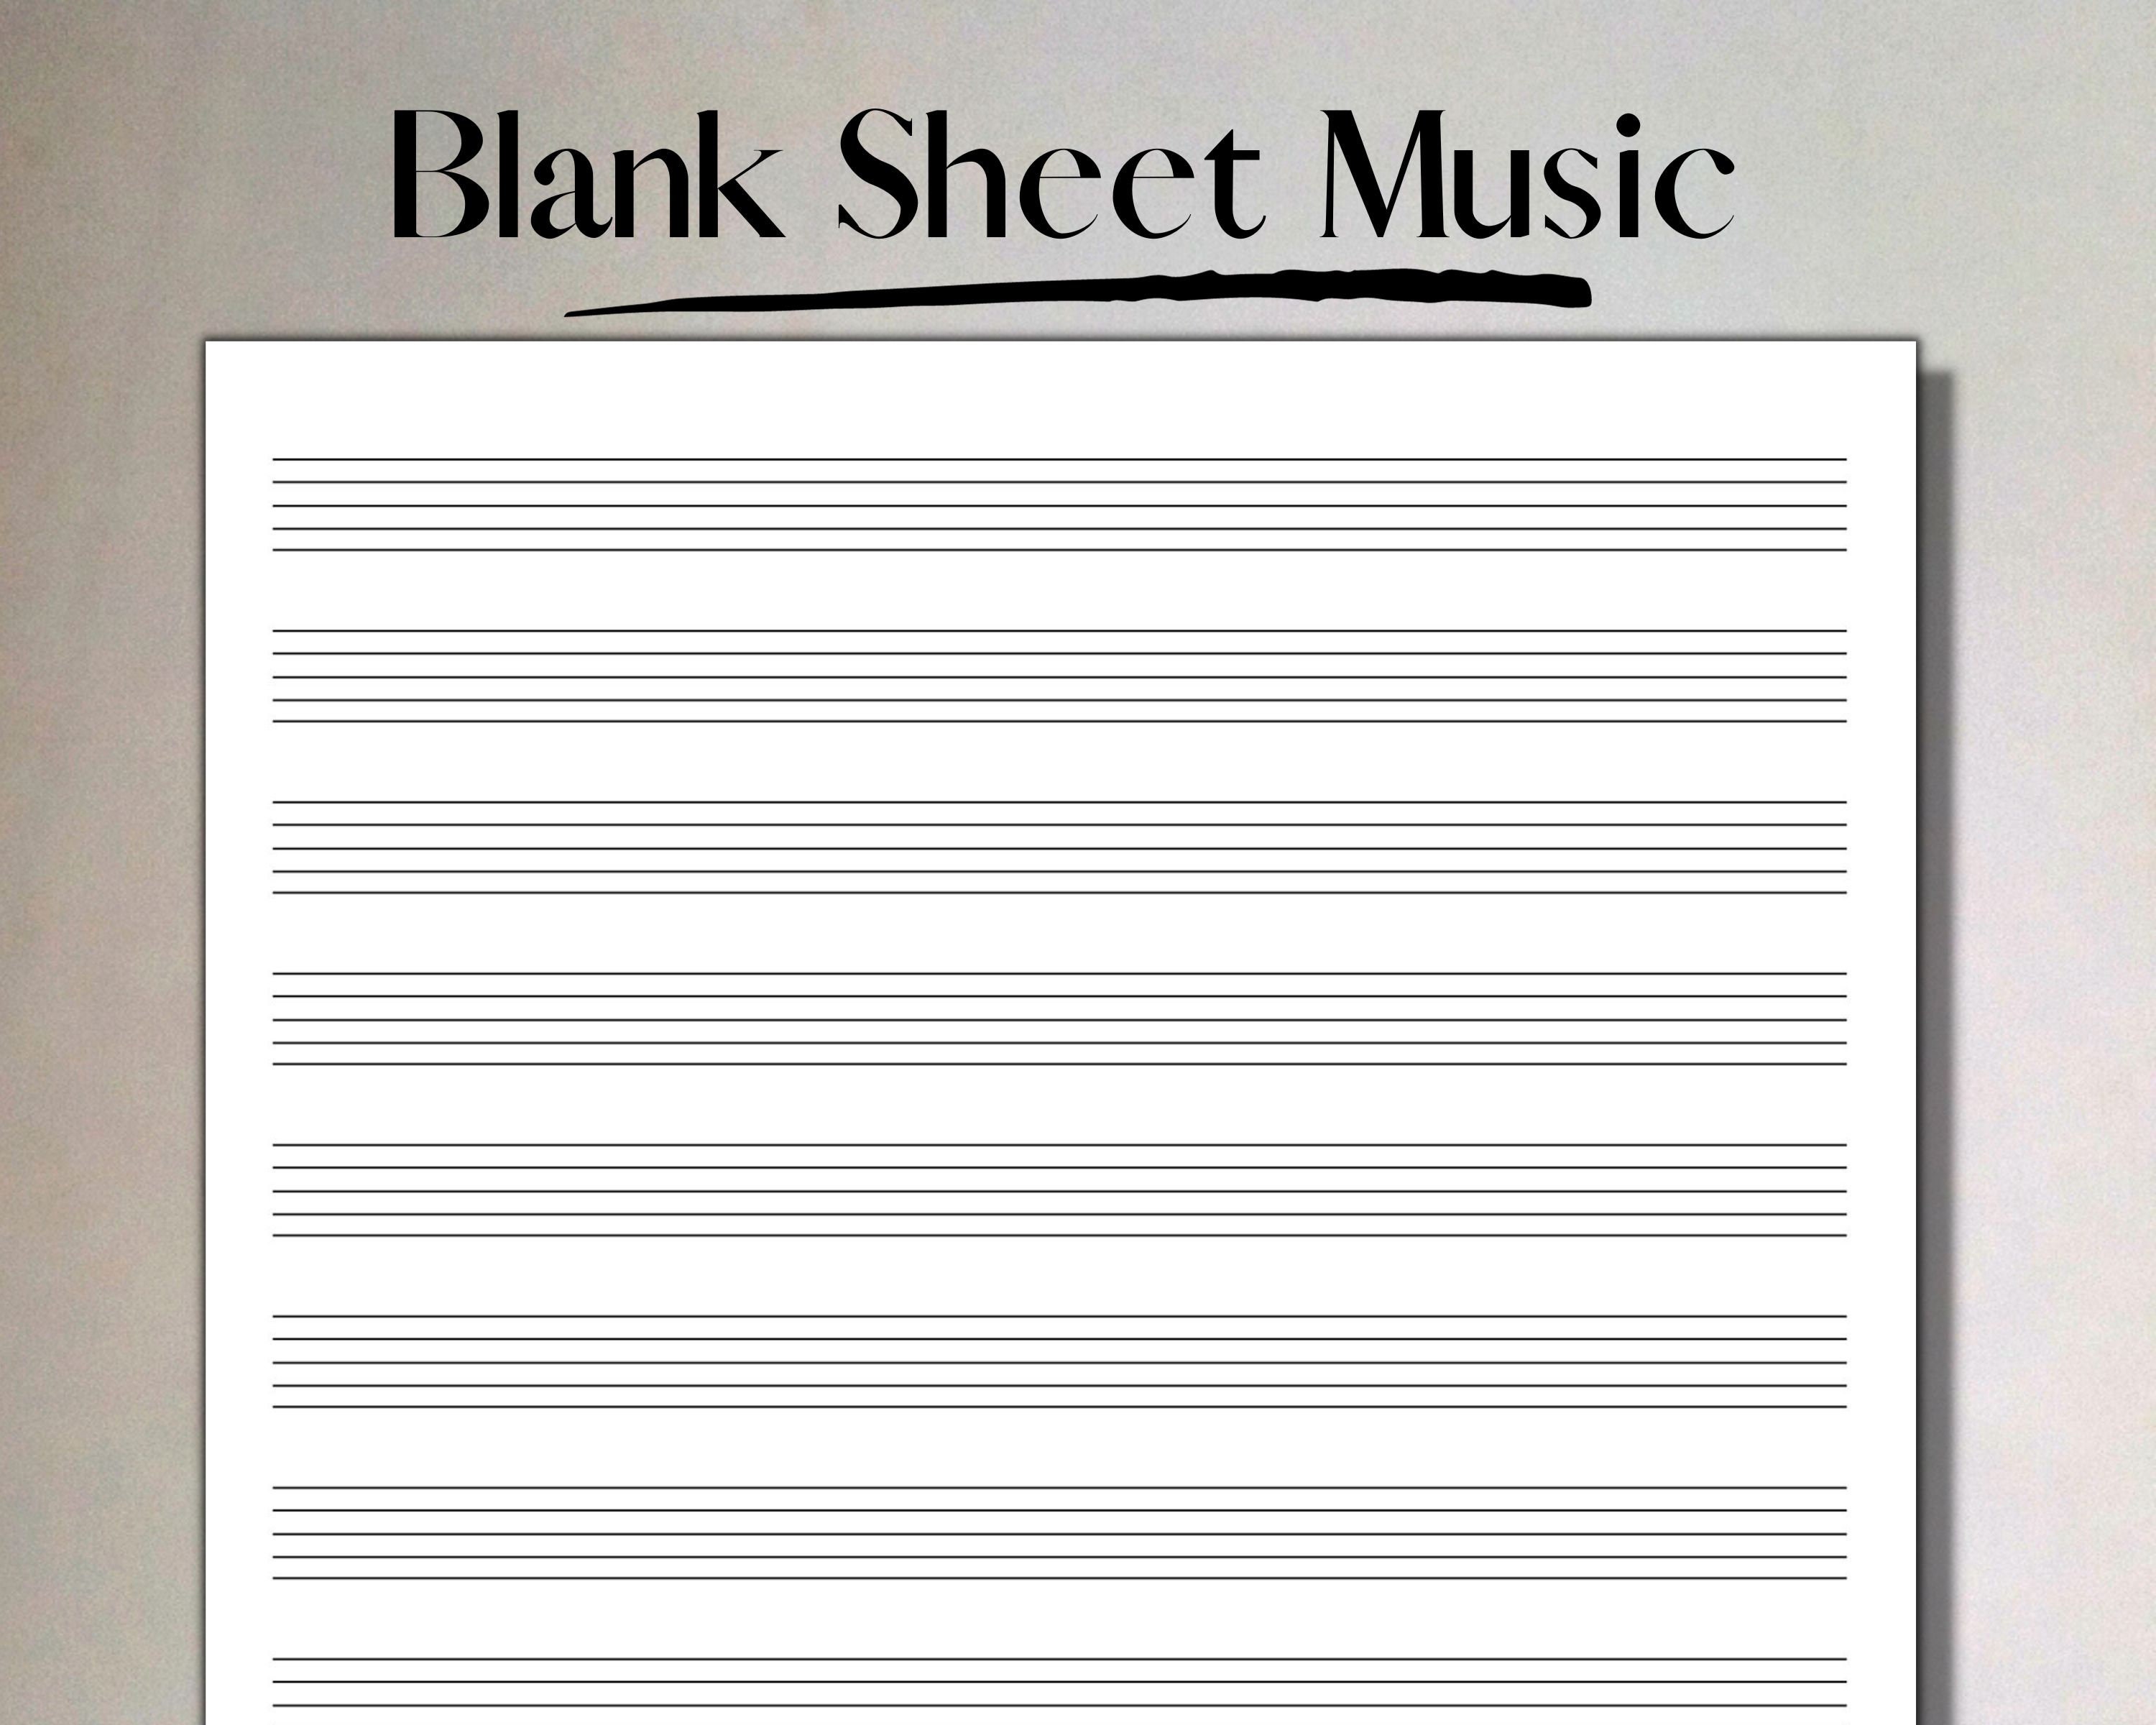 Blank sheet music – Free Printable PDF